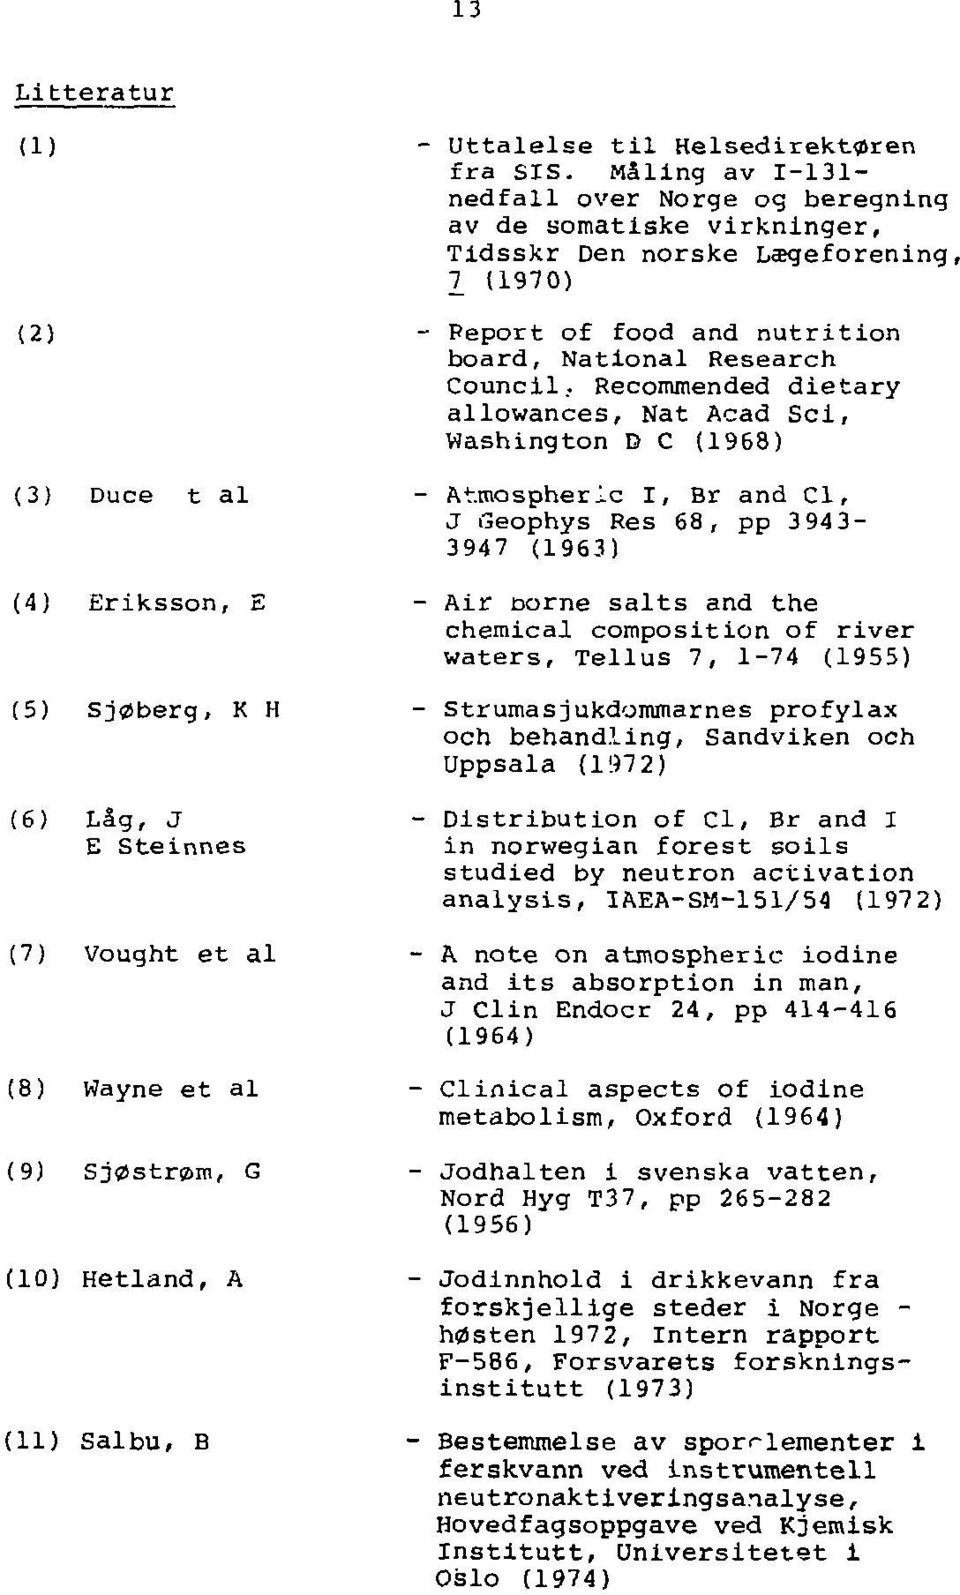 Måling av 1-131- nedfall over Norge og beregning av de somatiske virkninger, Tidsskr Den norske Lægeiorening, 7 (1970) Peport of food and nutrition board, National Research Council, Recommended